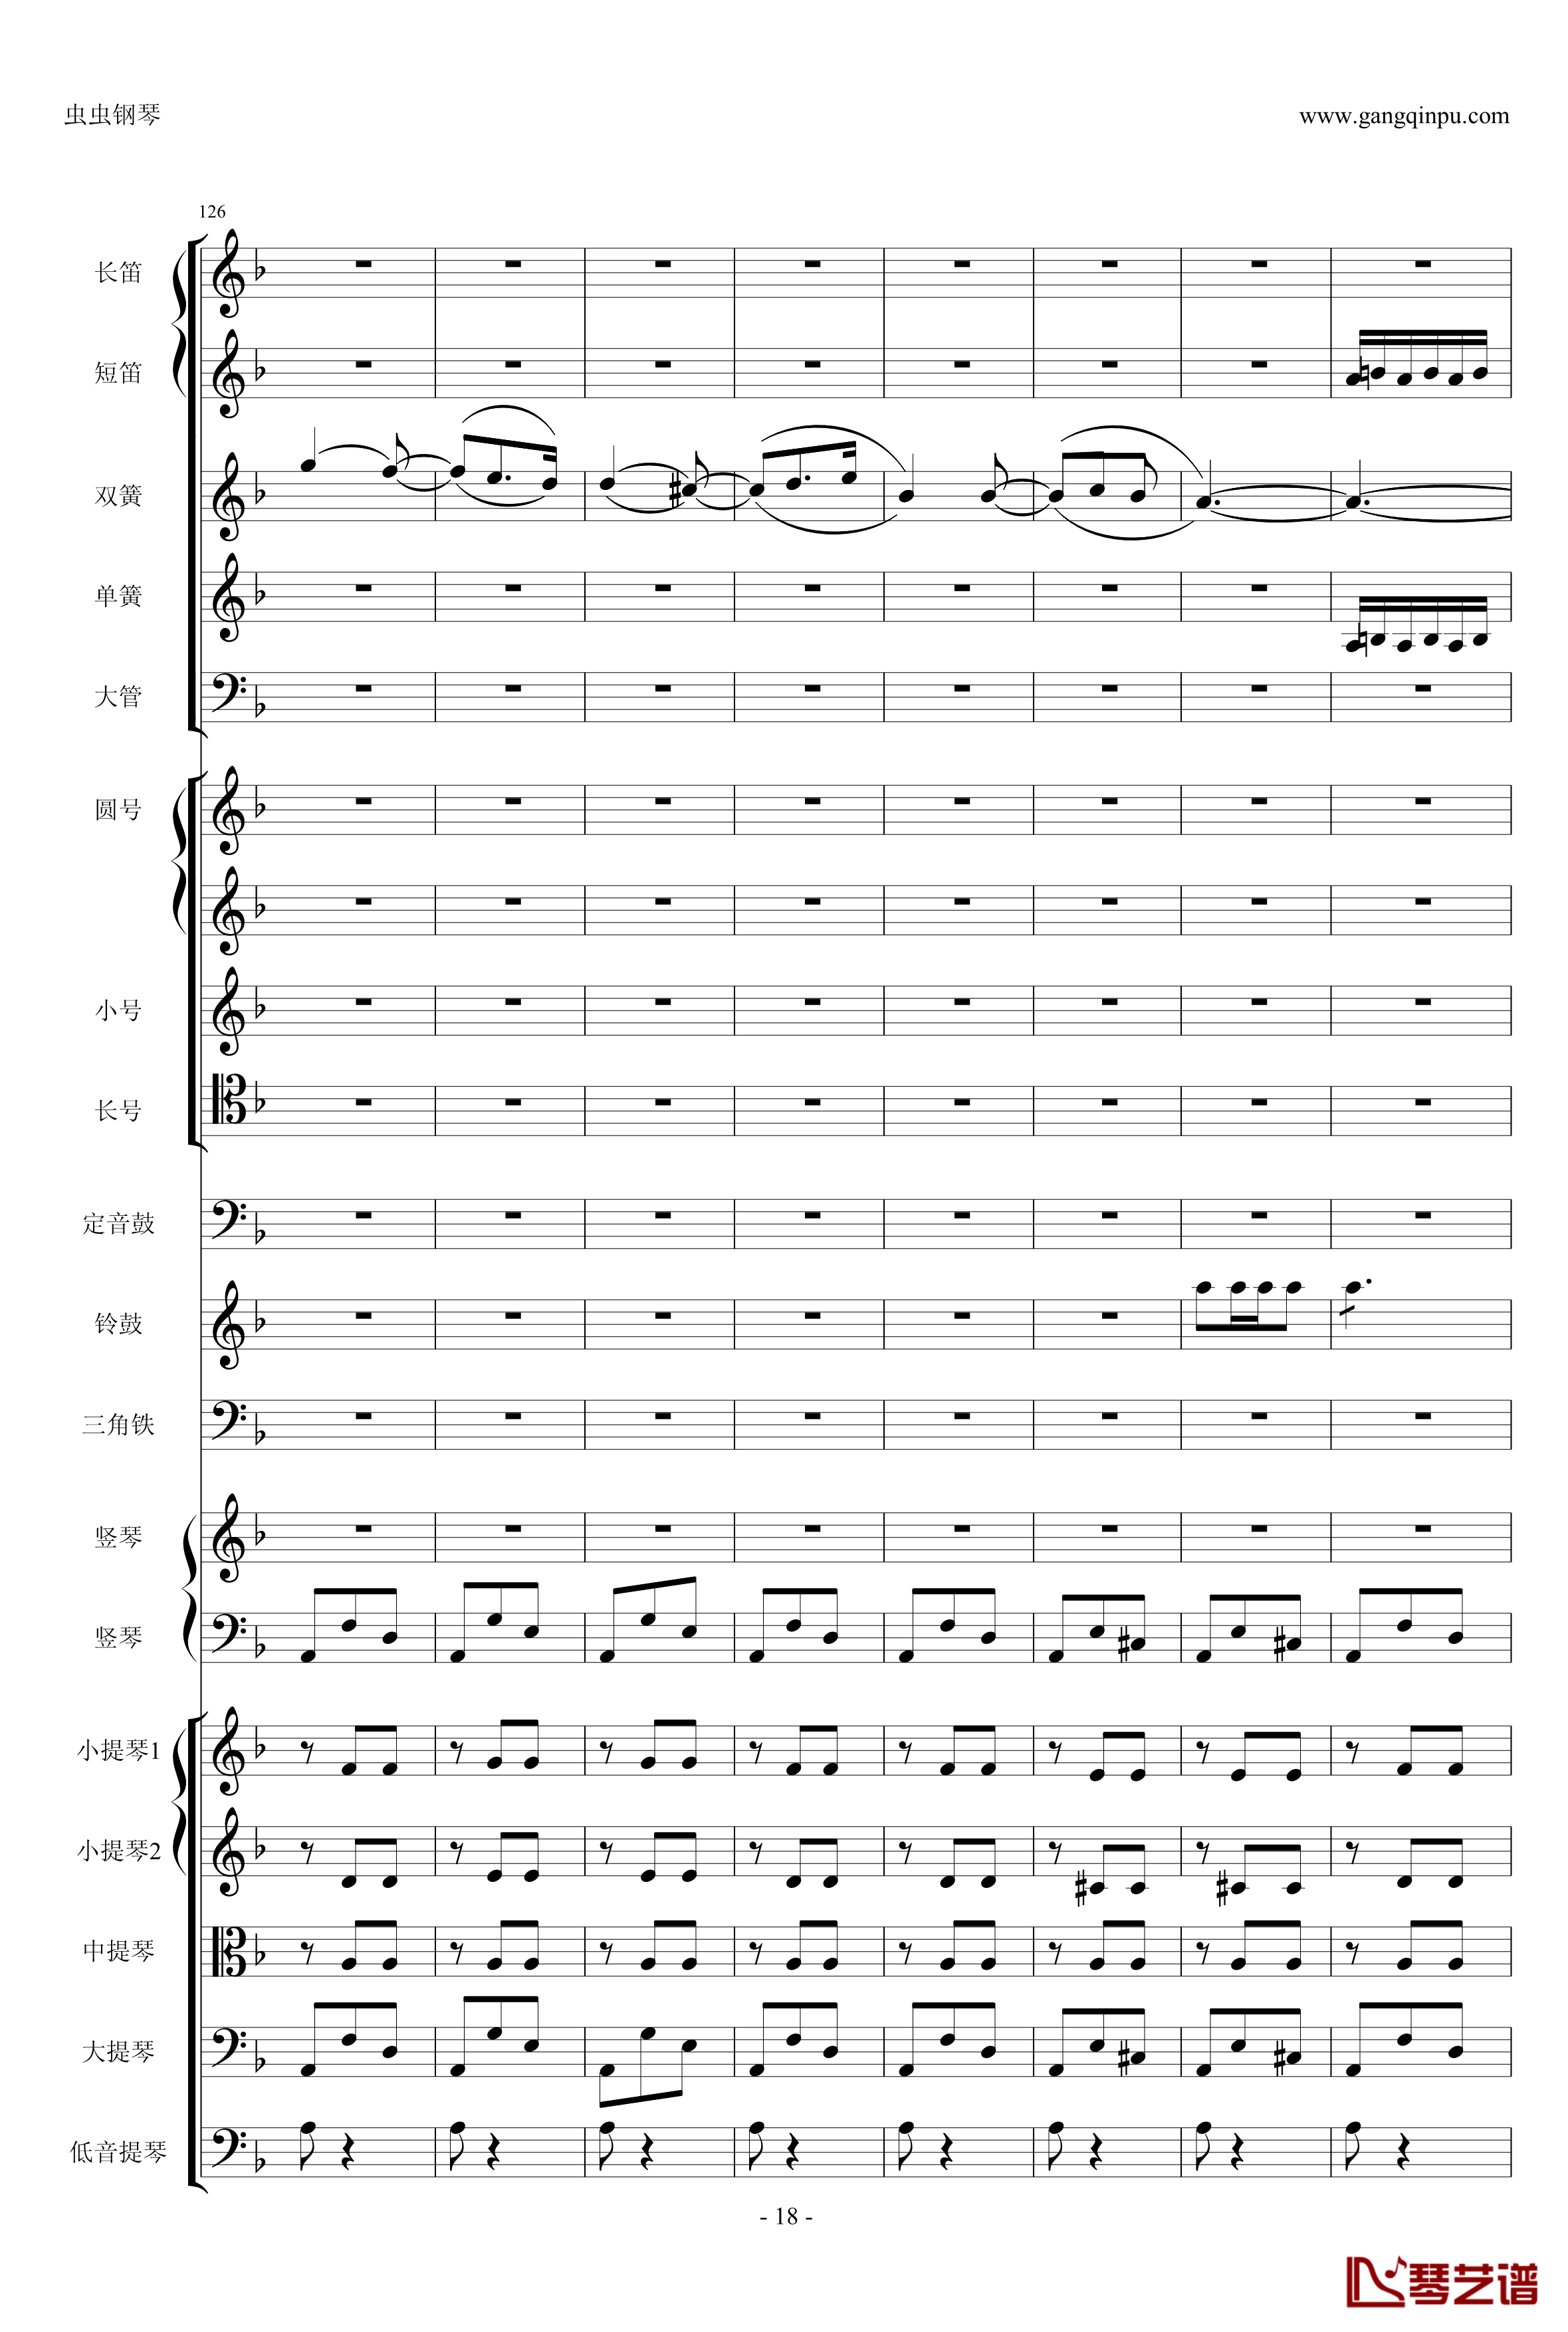 歌剧卡门选段钢琴谱-比才-Bizet- 第四幕间奏曲18